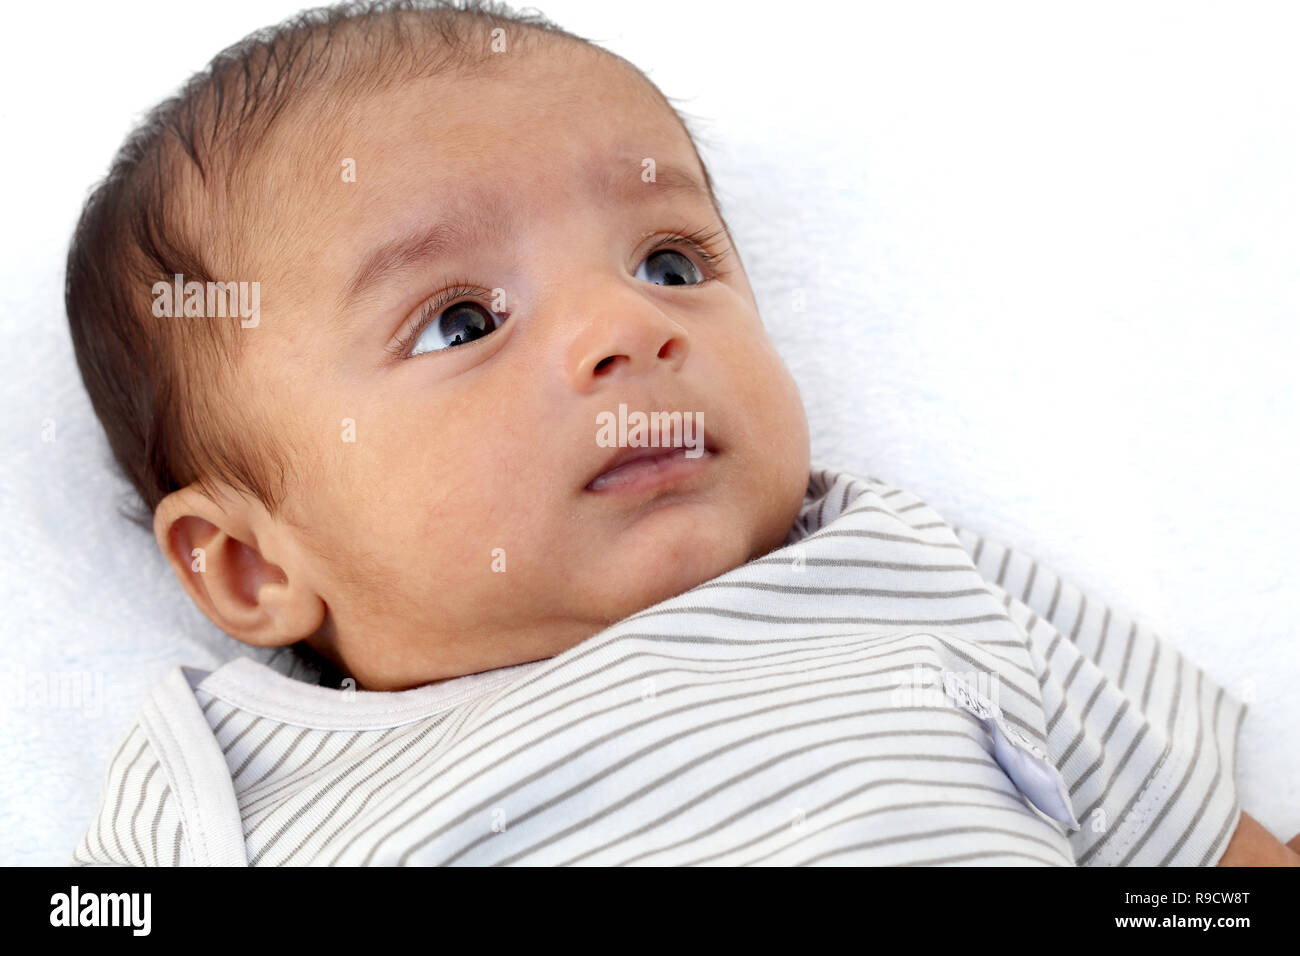 Cheerful Indian newborn baby close up Stock Photo